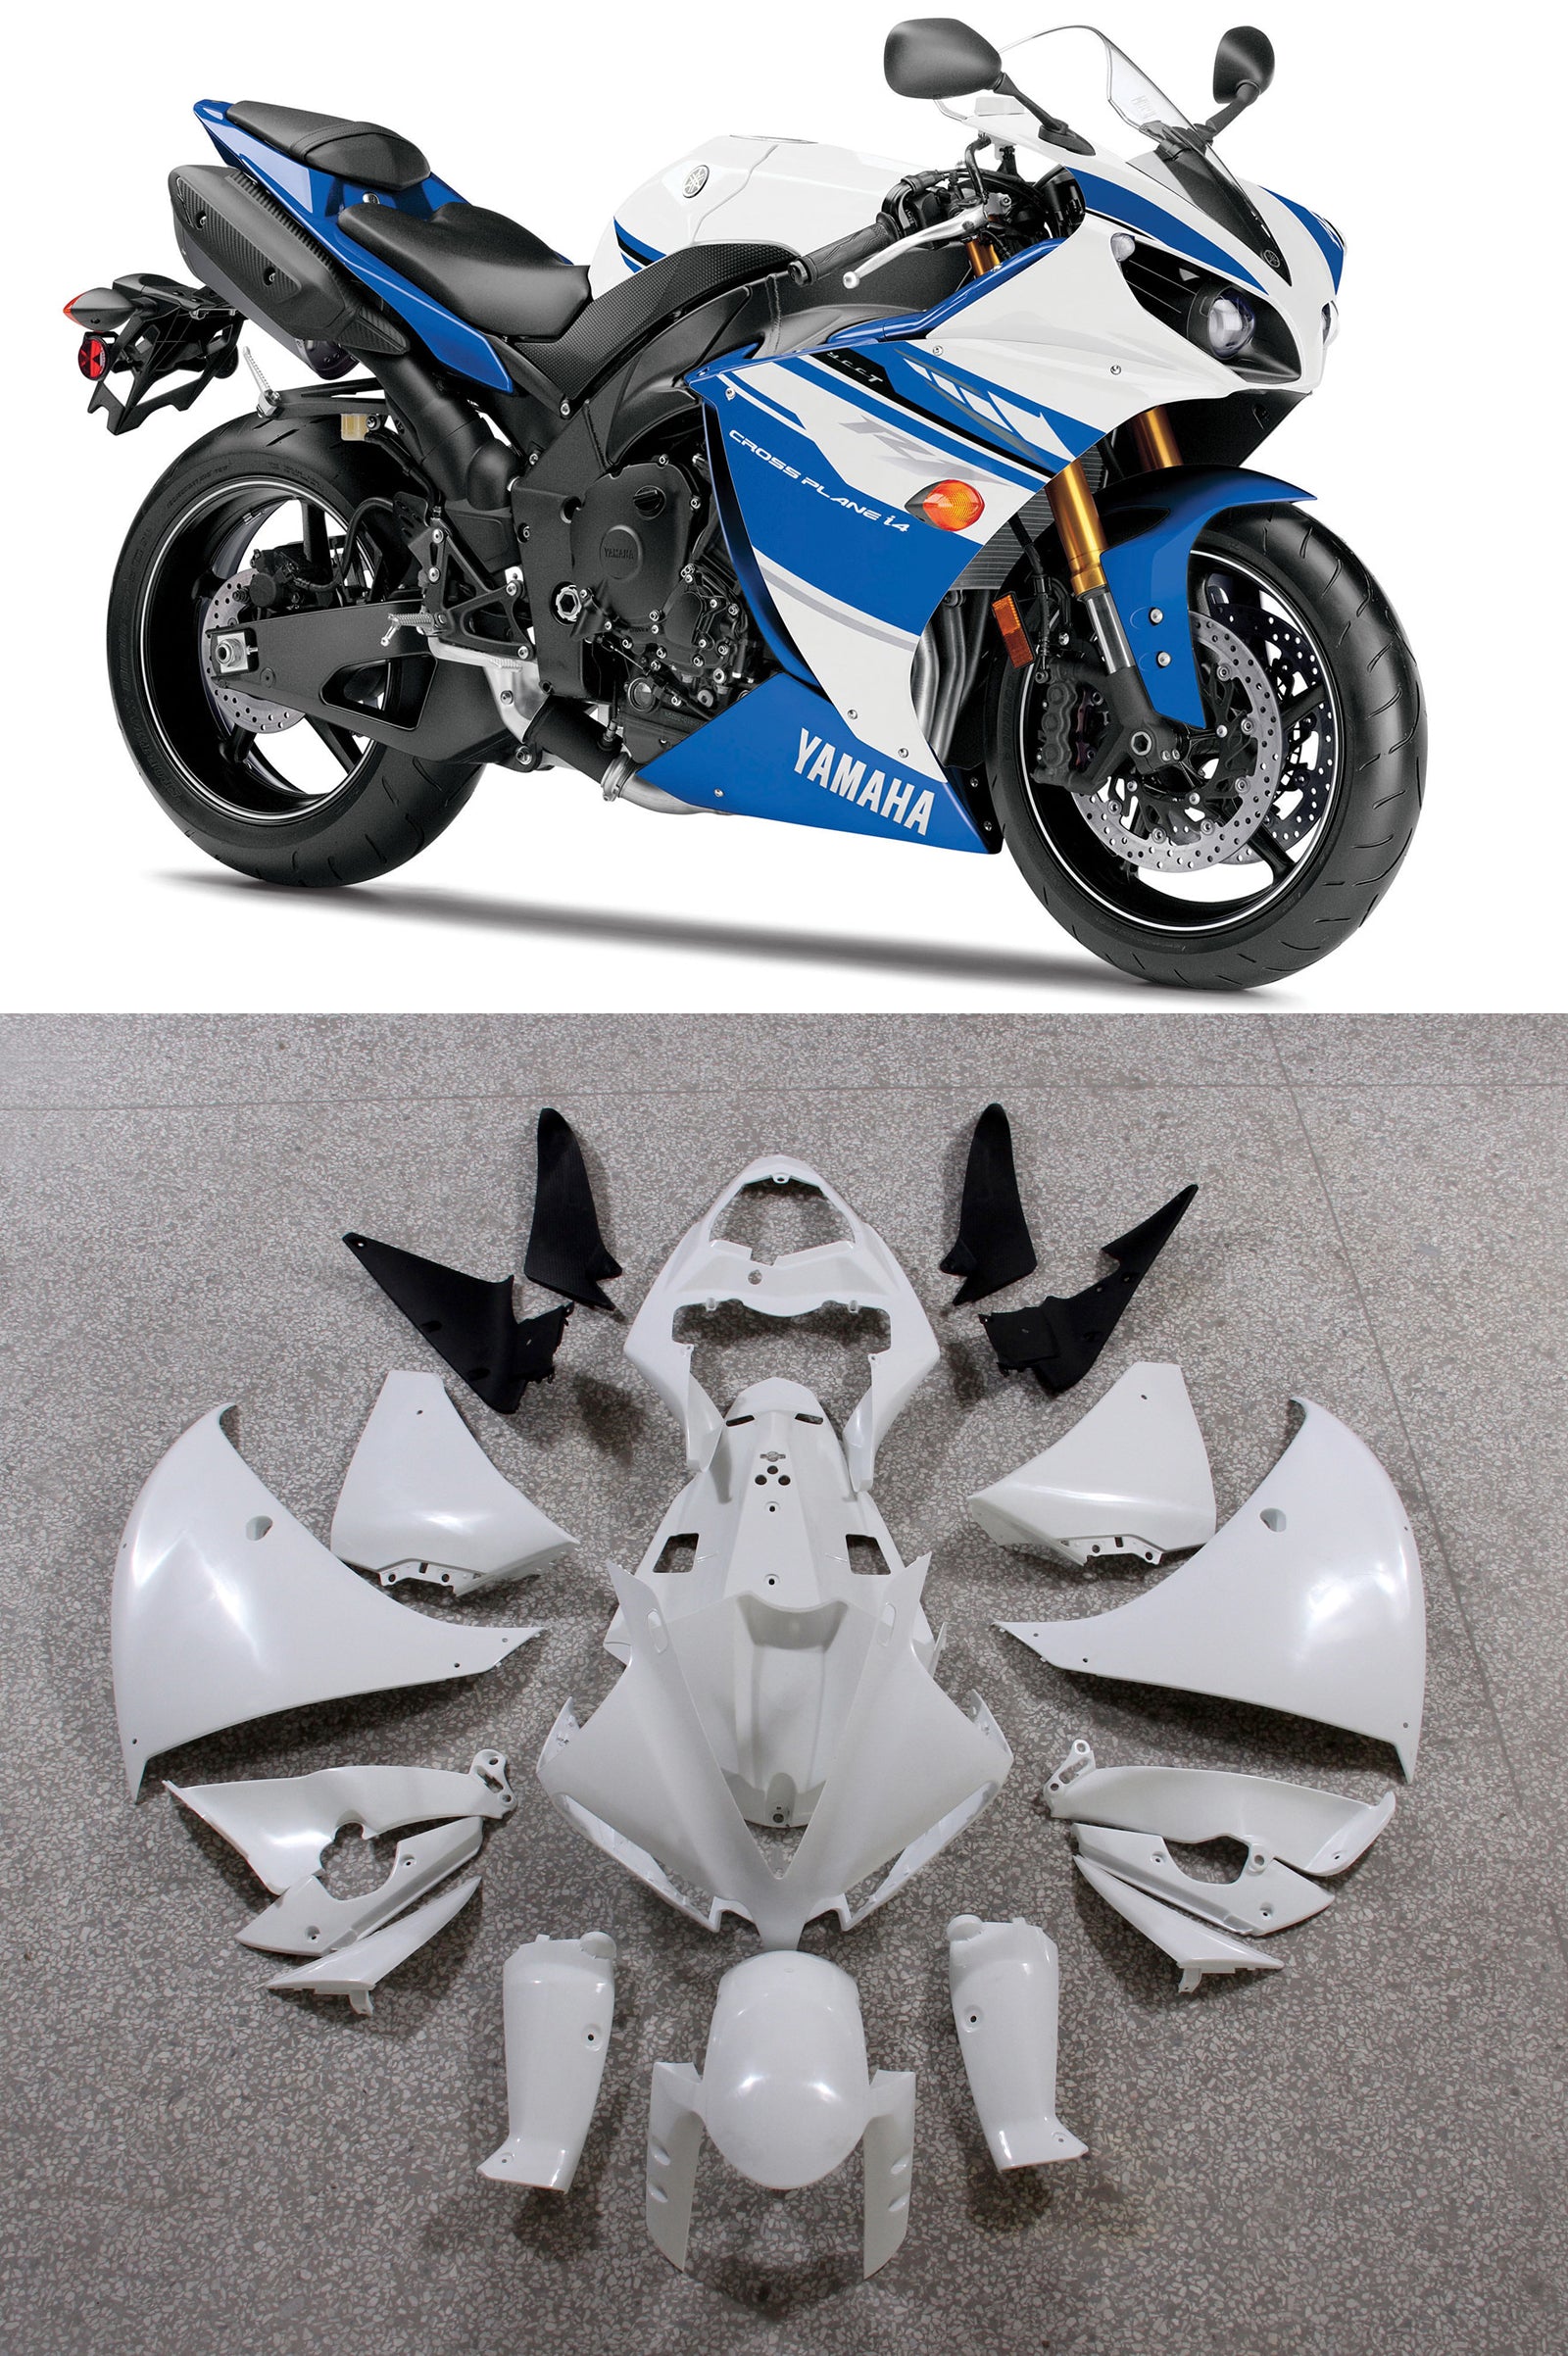 Amotopart 2012-2014 Yamaha R1 Fairing Blue&White Style4 Kit